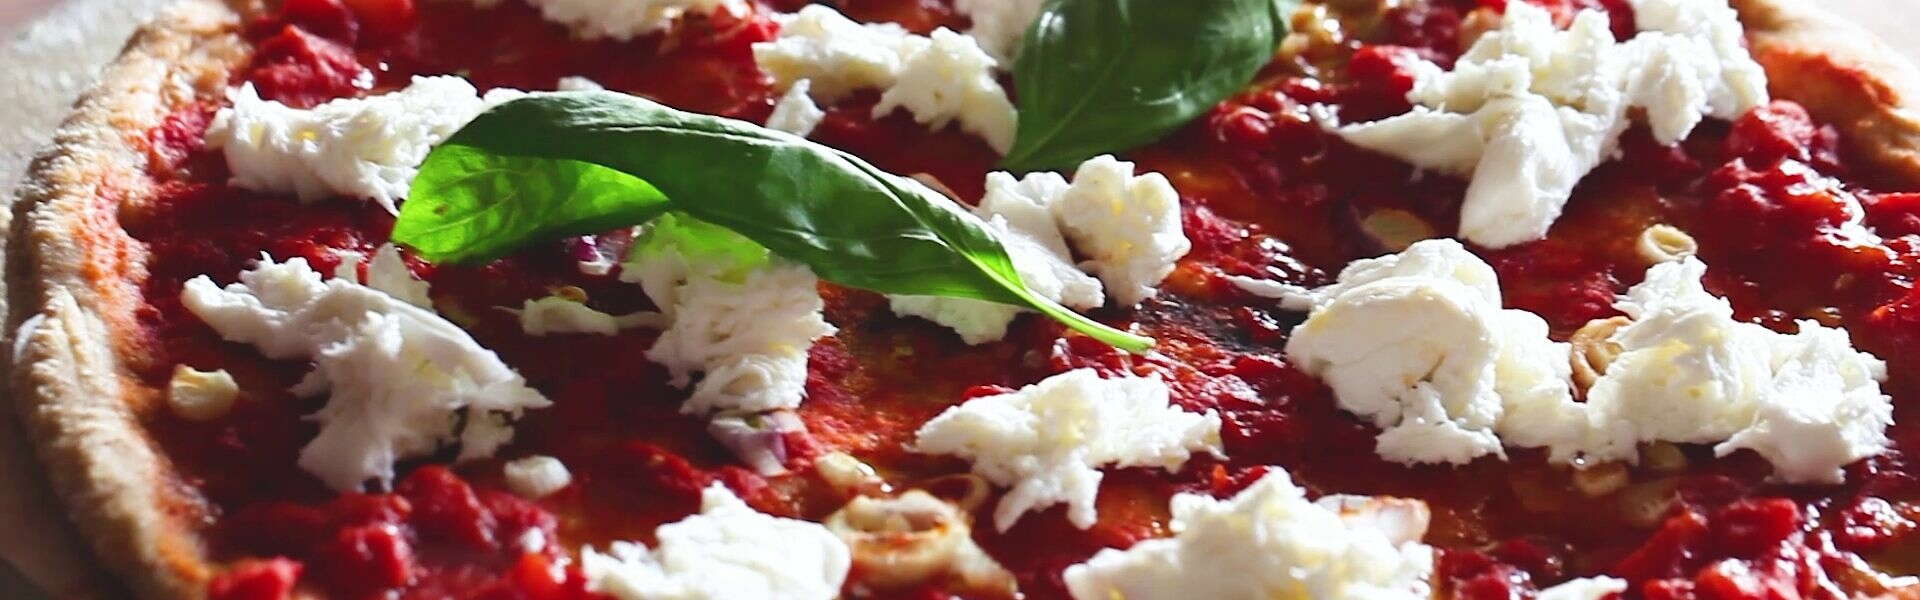 Ricetta della salute | Pizza fatta in casa: ricca, salutare e...buonissima!